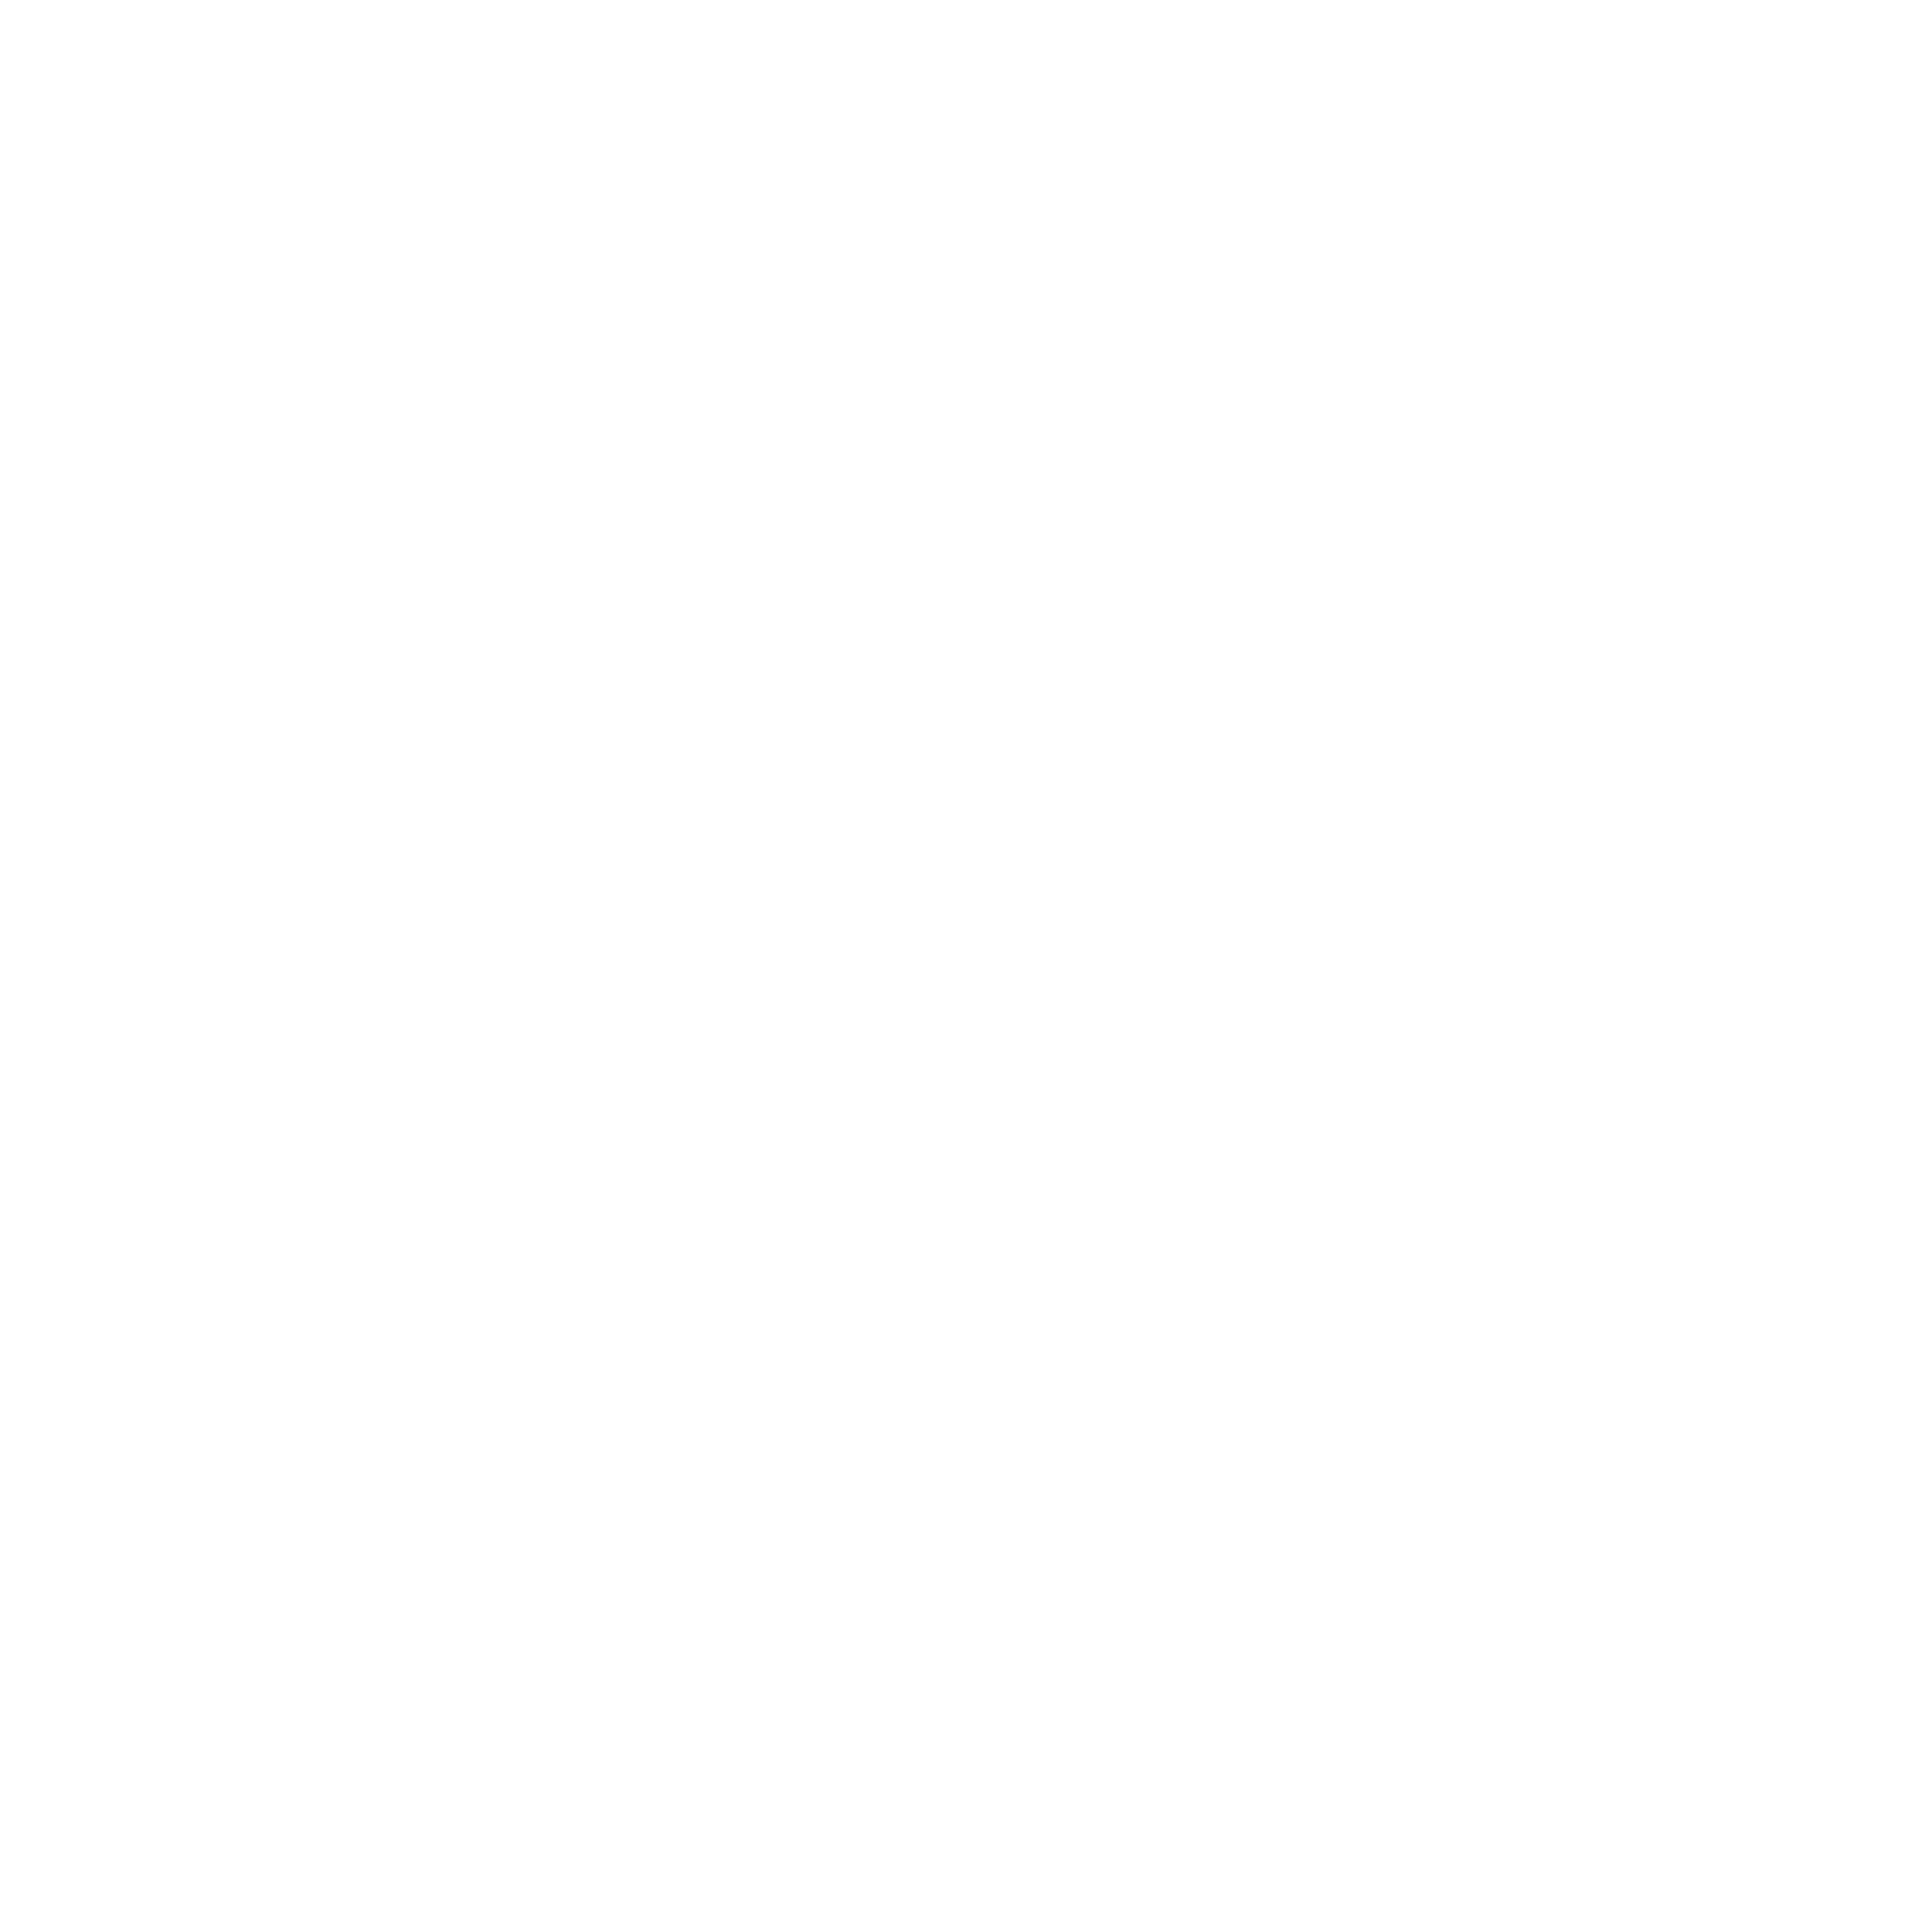 https://www.xerezclubdeportivo.es/wp-content/uploads/2022/09/logo_tododisca.png